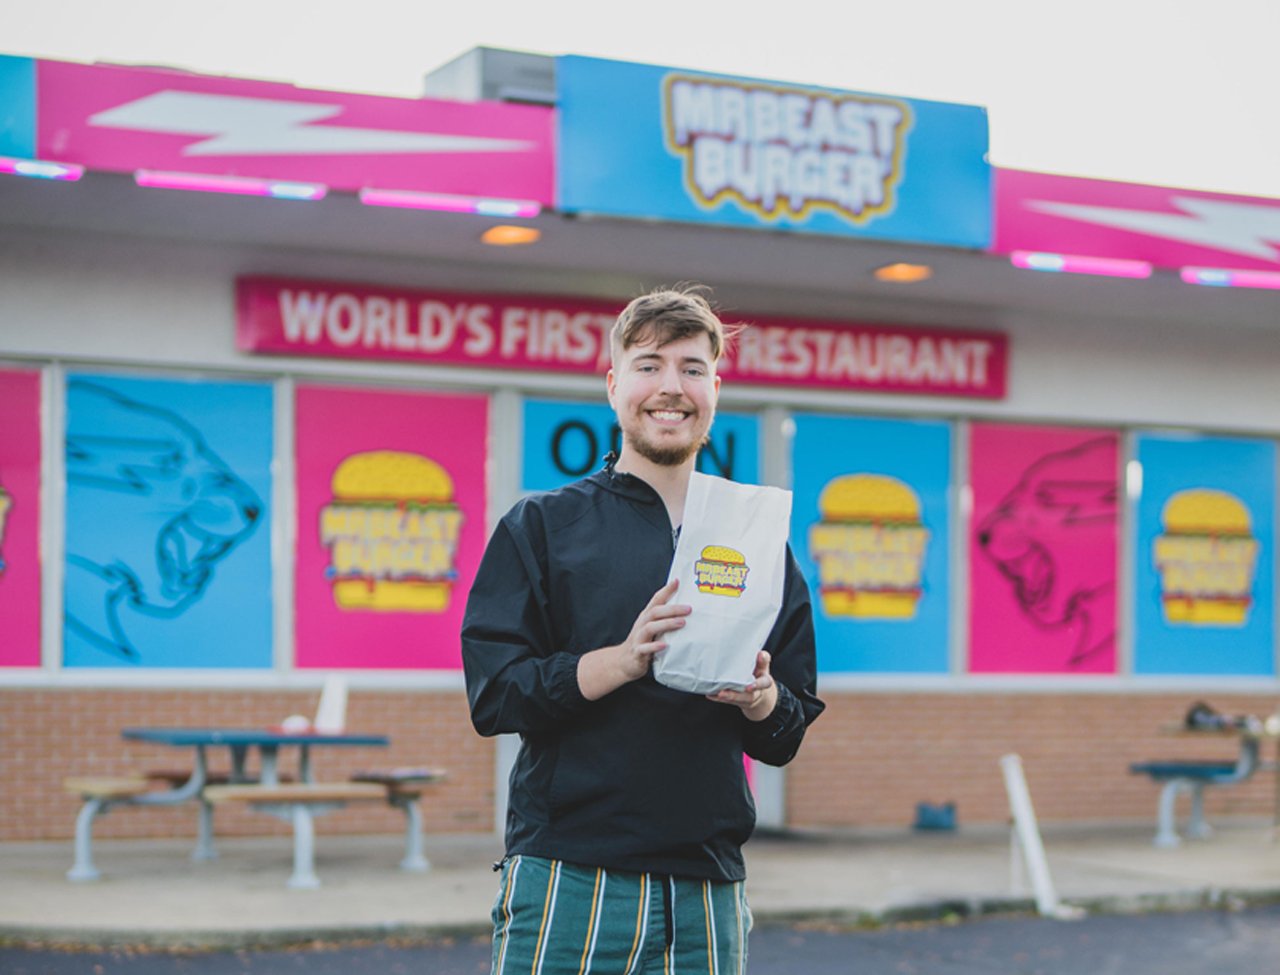 How MrBeast Burger made $720k in the first month – viral marketing  strategies - Kickstart Side Hustle